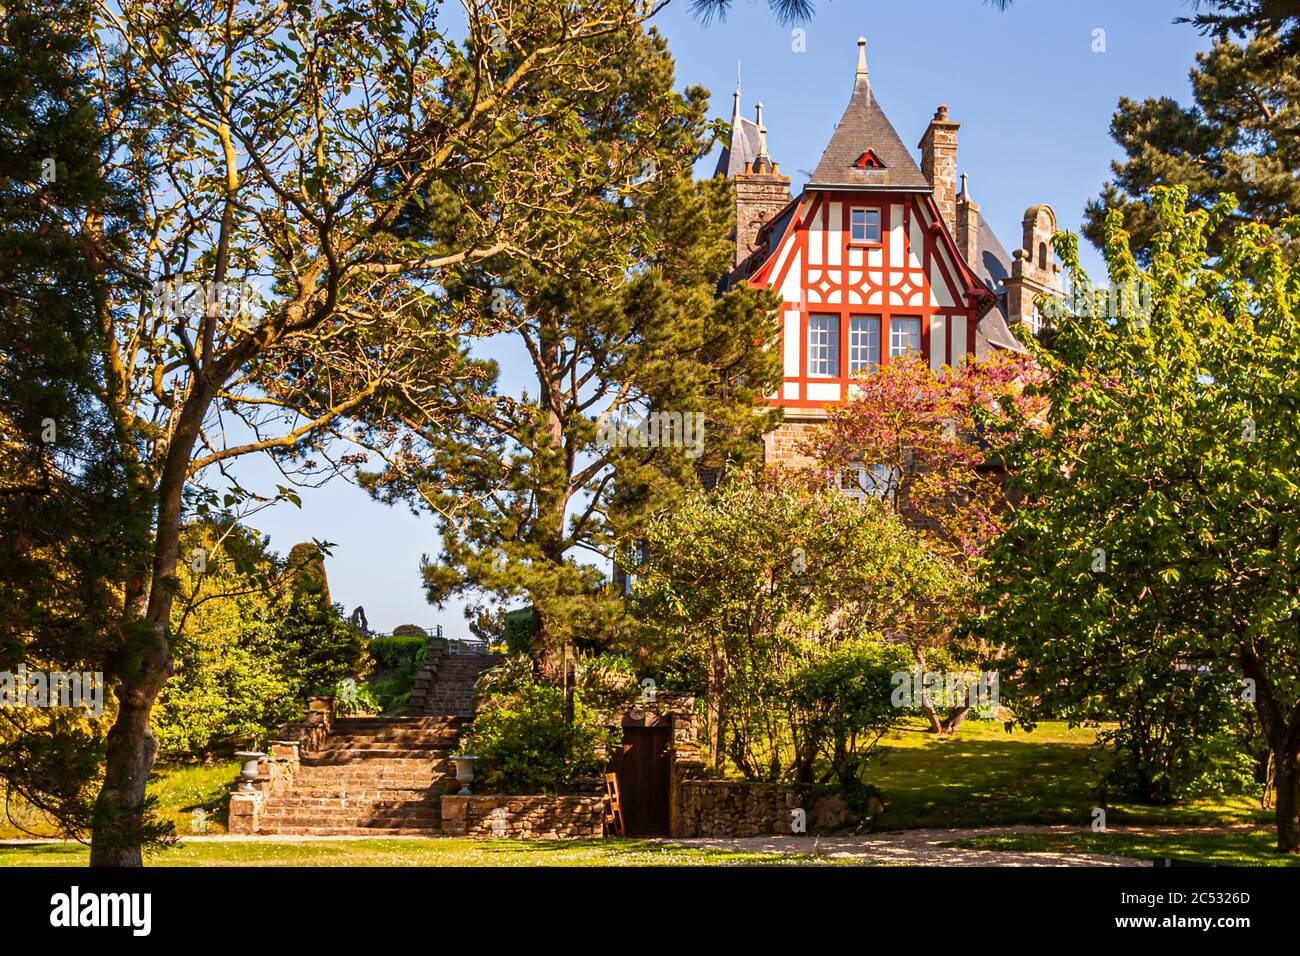 Il Château de Richeux è nascosto dietro alberi alti. E' un hotel con il premiato ristorante le Coquillage. Ferme du Vent vicino a Château Richeux, Saint-Malo, Francia Foto Stock